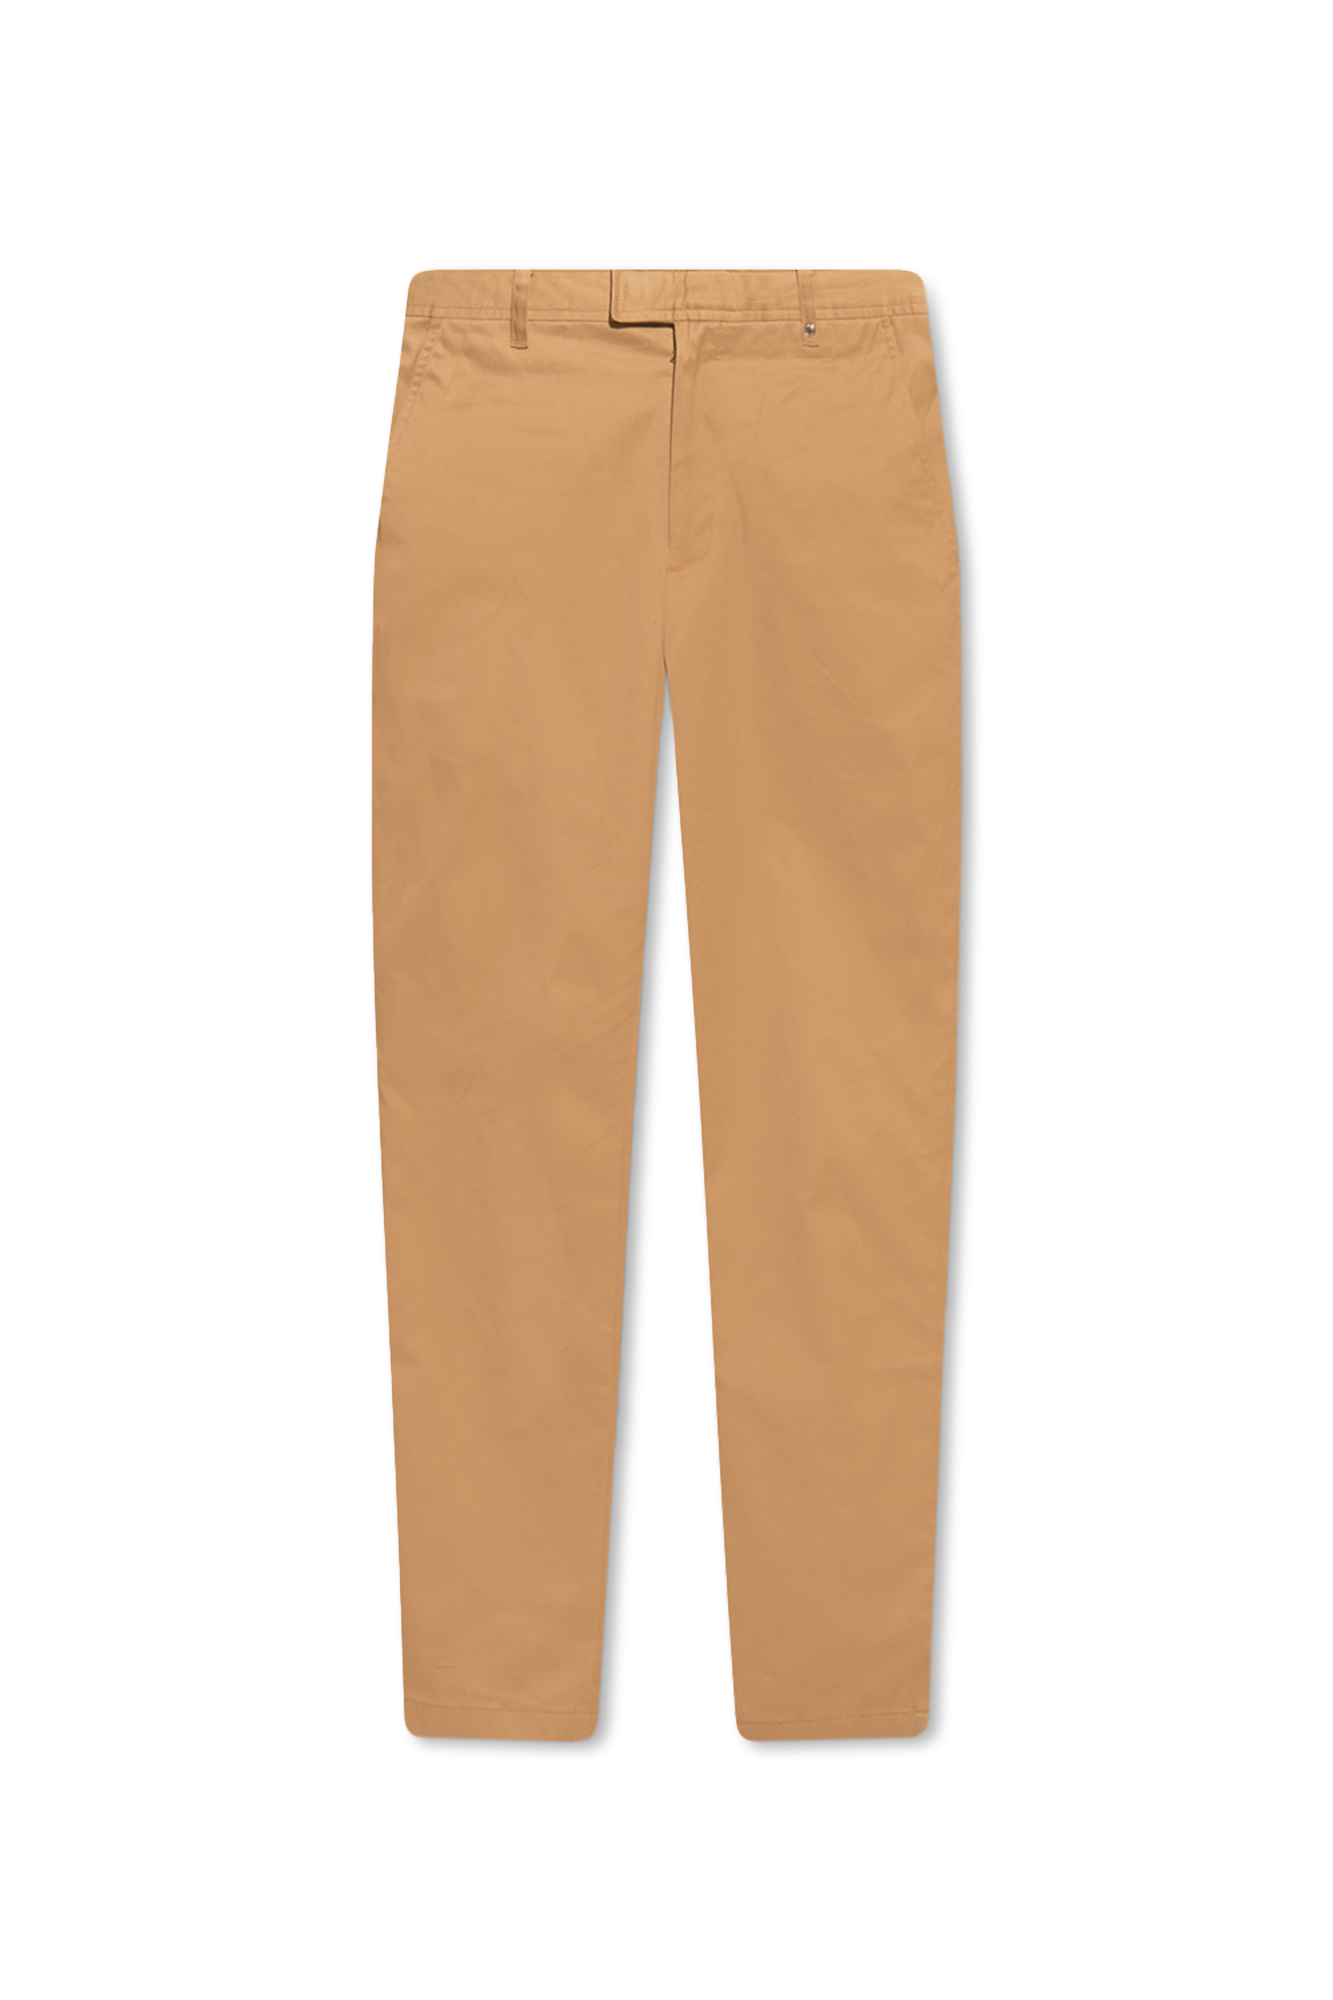 Burberry ‘Shilton’ cotton chino trousers